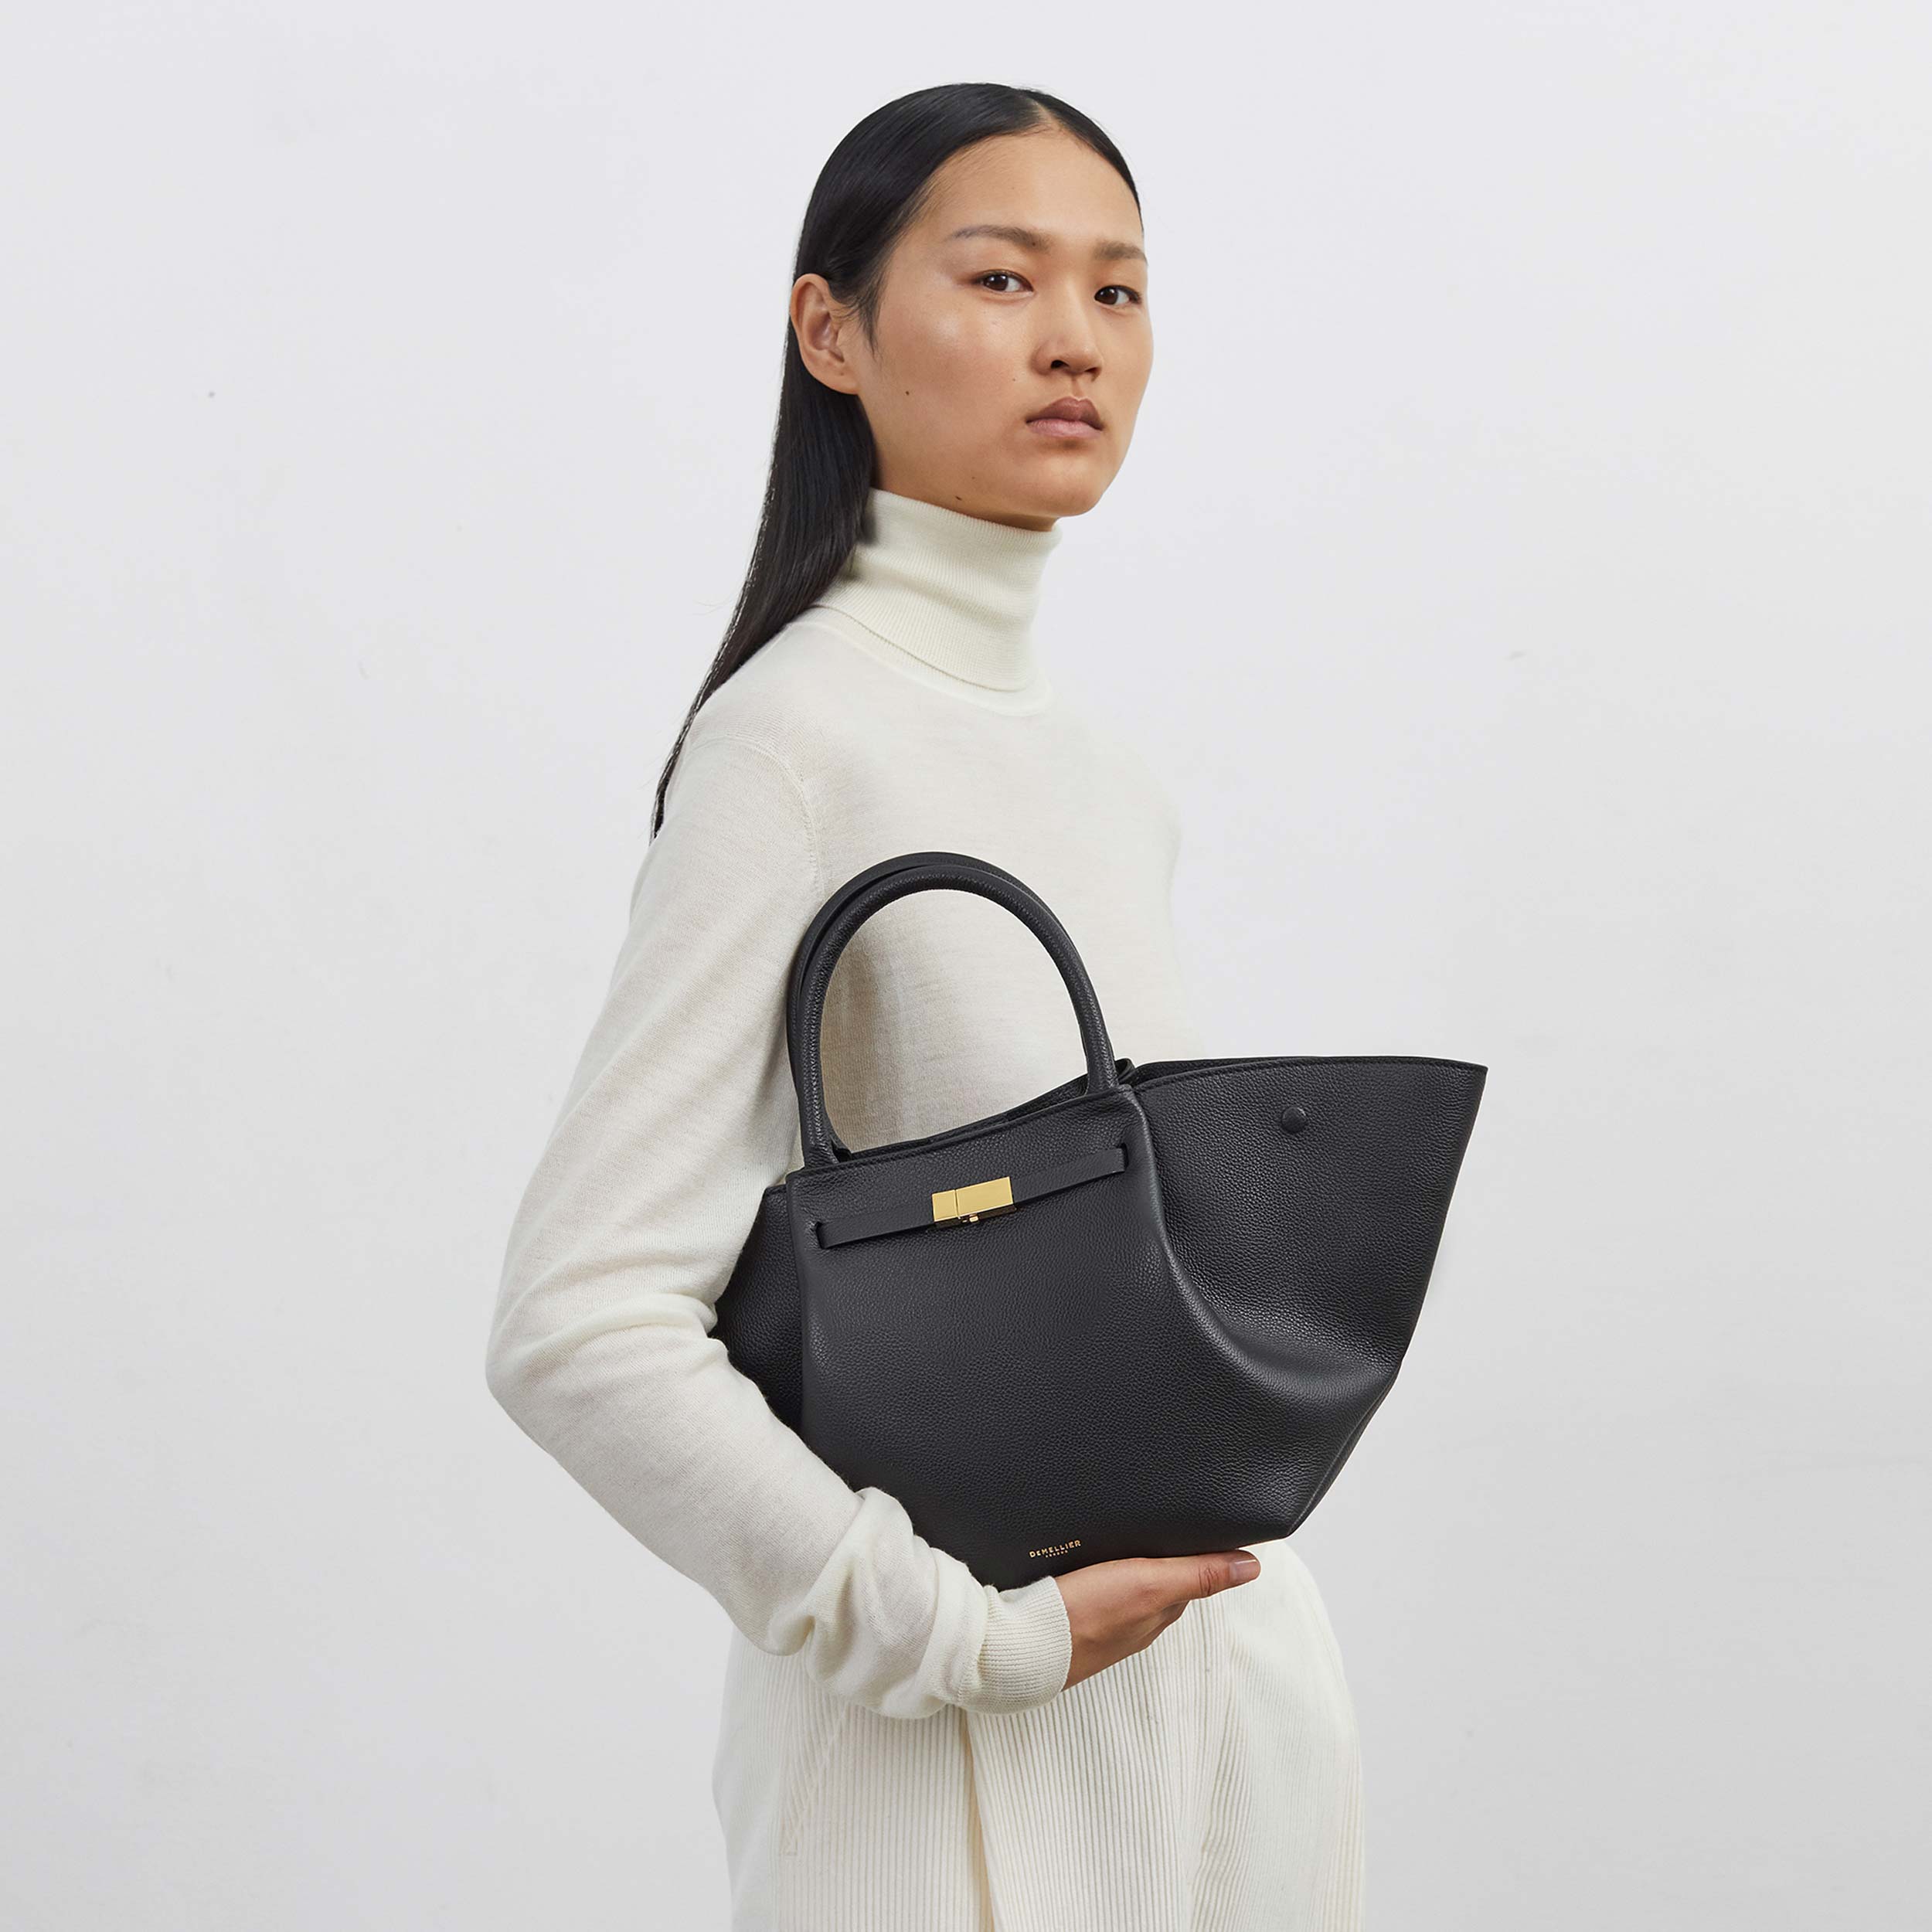 Maxx New York Signature Handbag / Purse / Hand Bag / Shiny Black and Red  Lined - Etsy